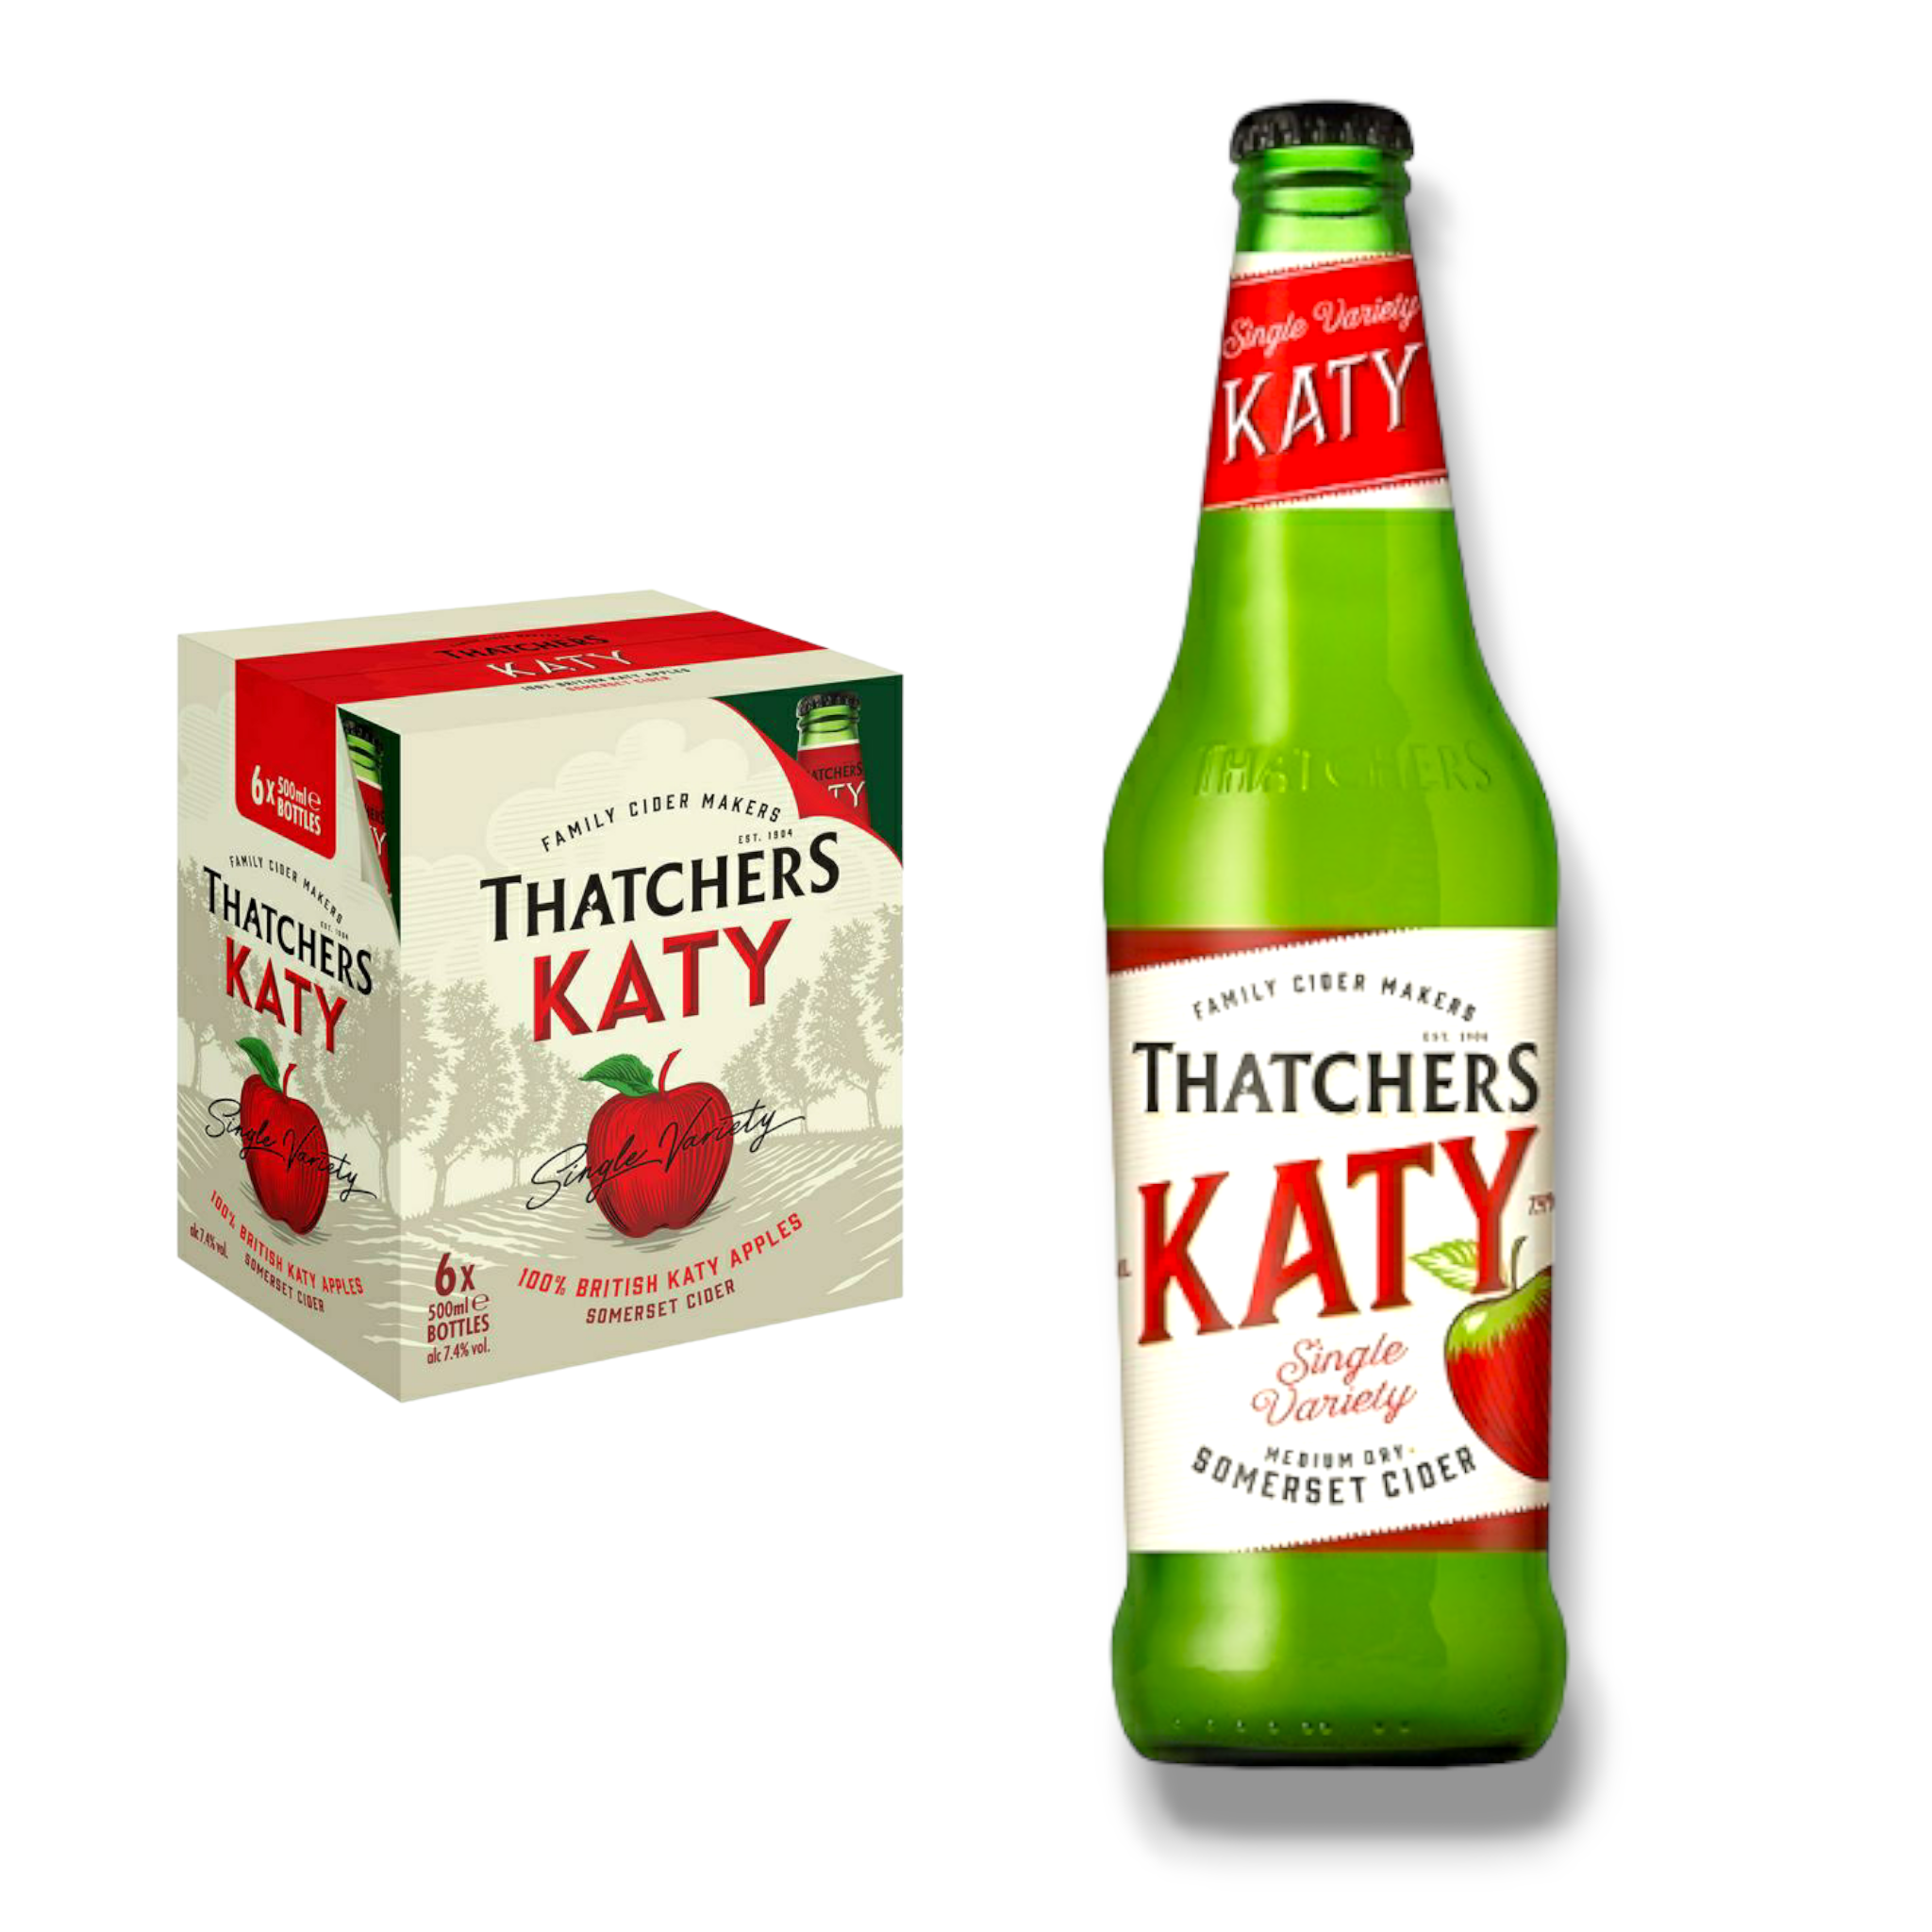 Thatchers Katy 0,5l - Medium dry Somerset Cider mit 7,4% Vol. - Apfelwein